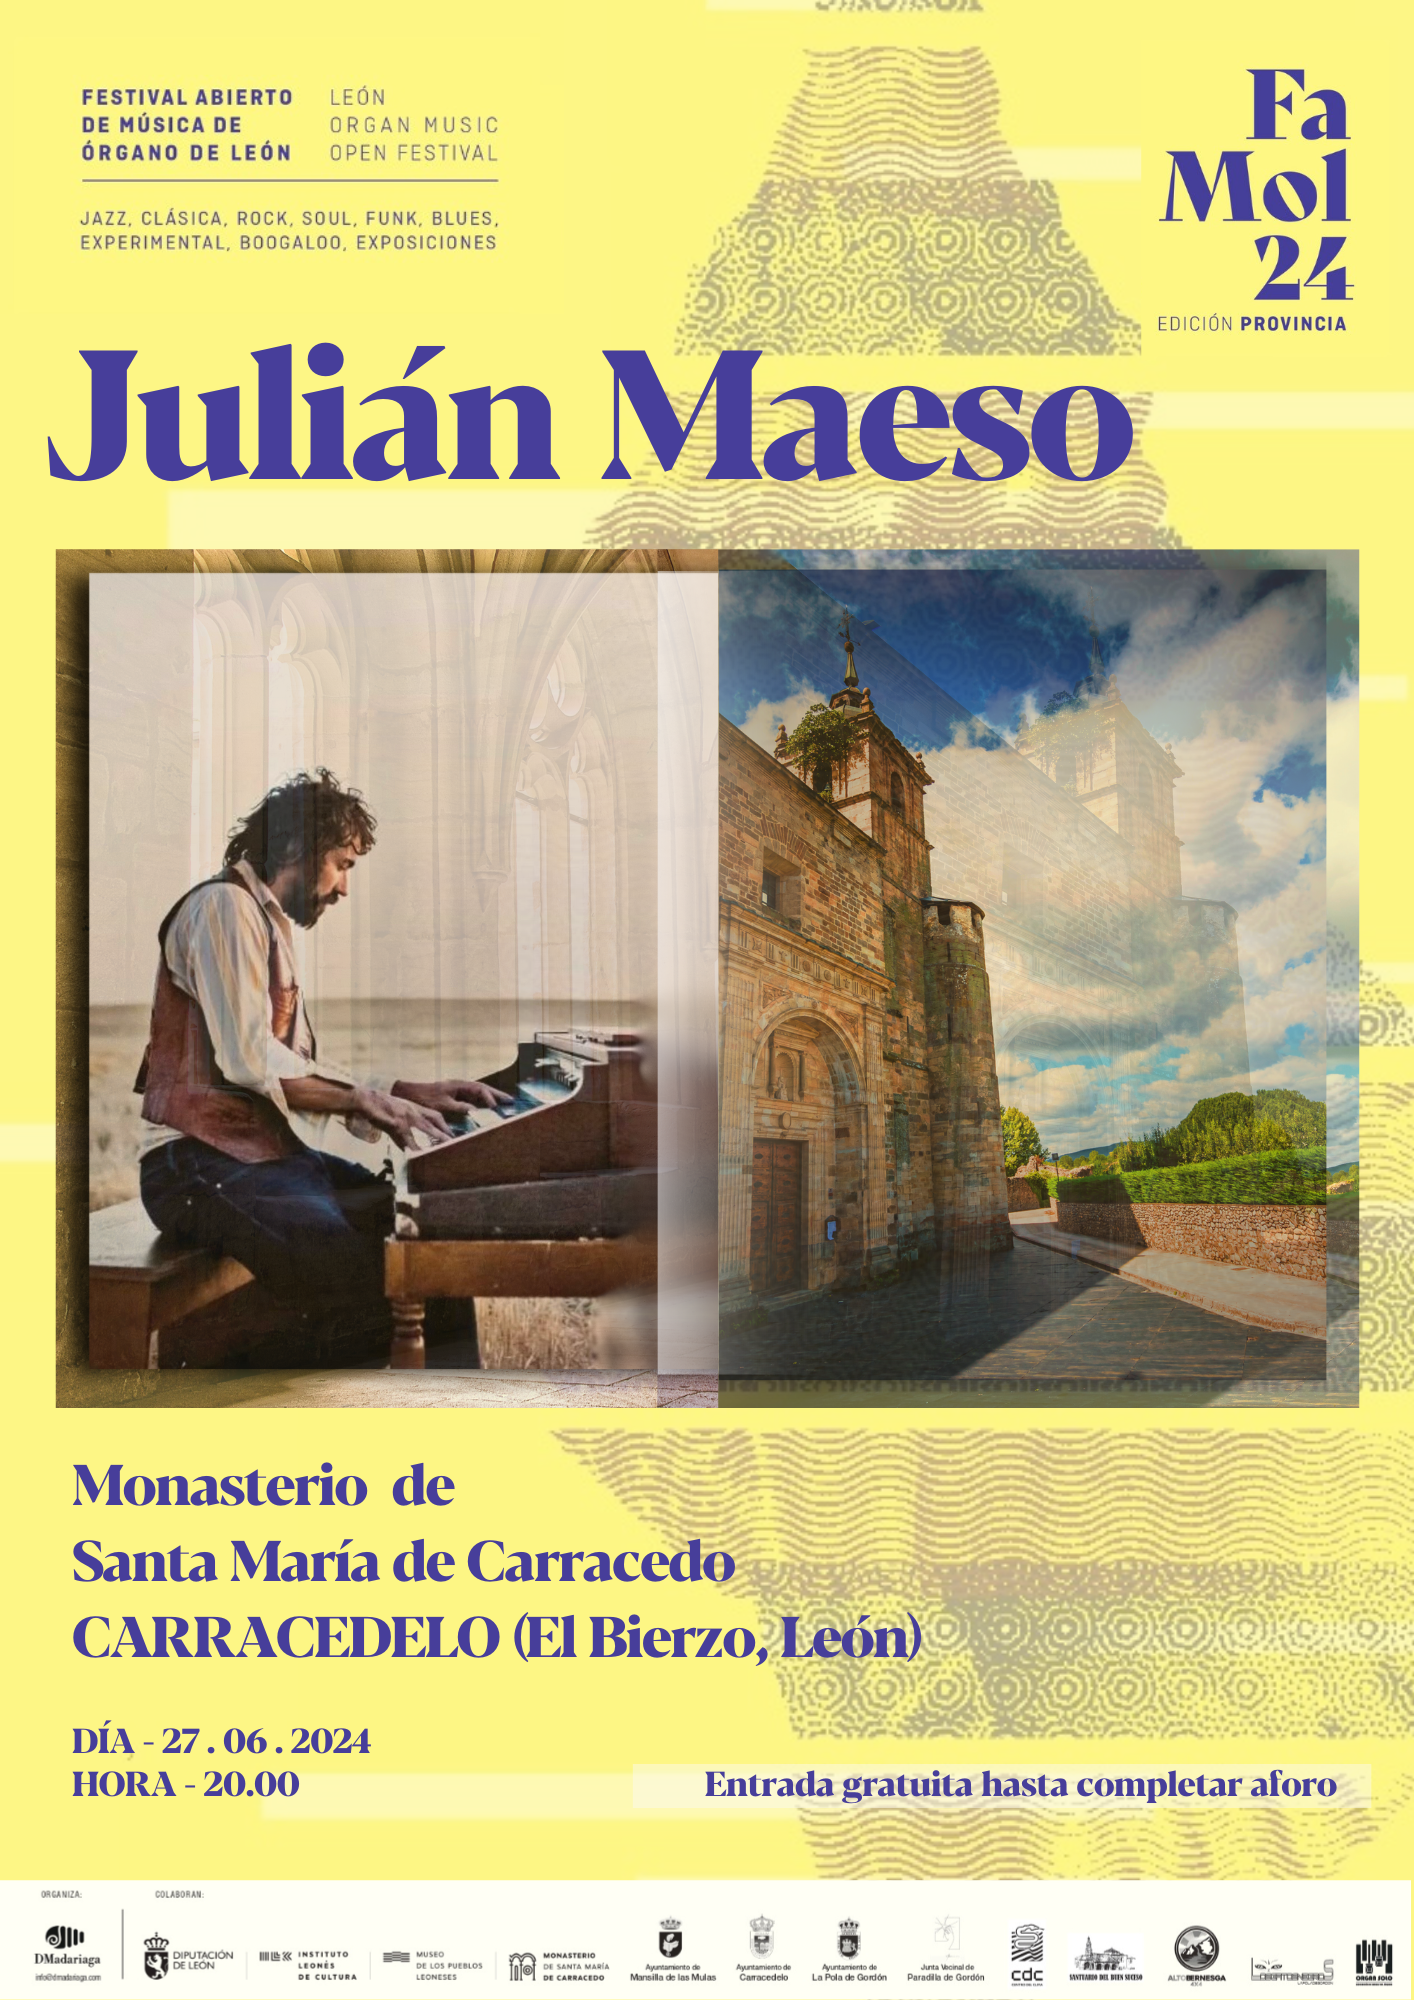  Un concierto de Julián Maeso abrirá el festival Famol ´24 en el Monasterio de Carracedo 2